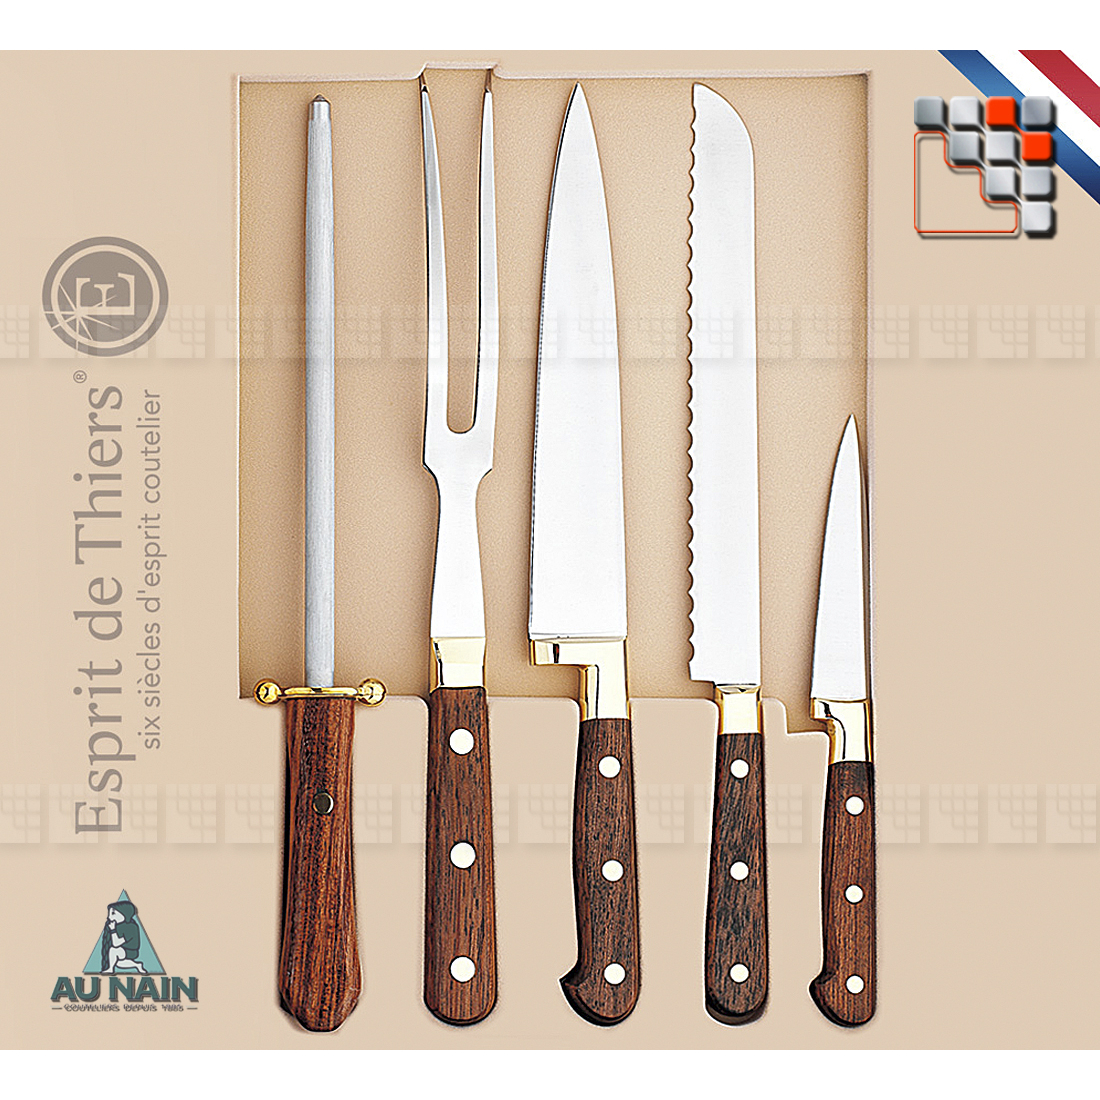 Coffret 5 pièces Prince Gastronome Palissandre AUNAIN A38-1808001 AU NAIN® Coutellerie Couteaux & Découpe